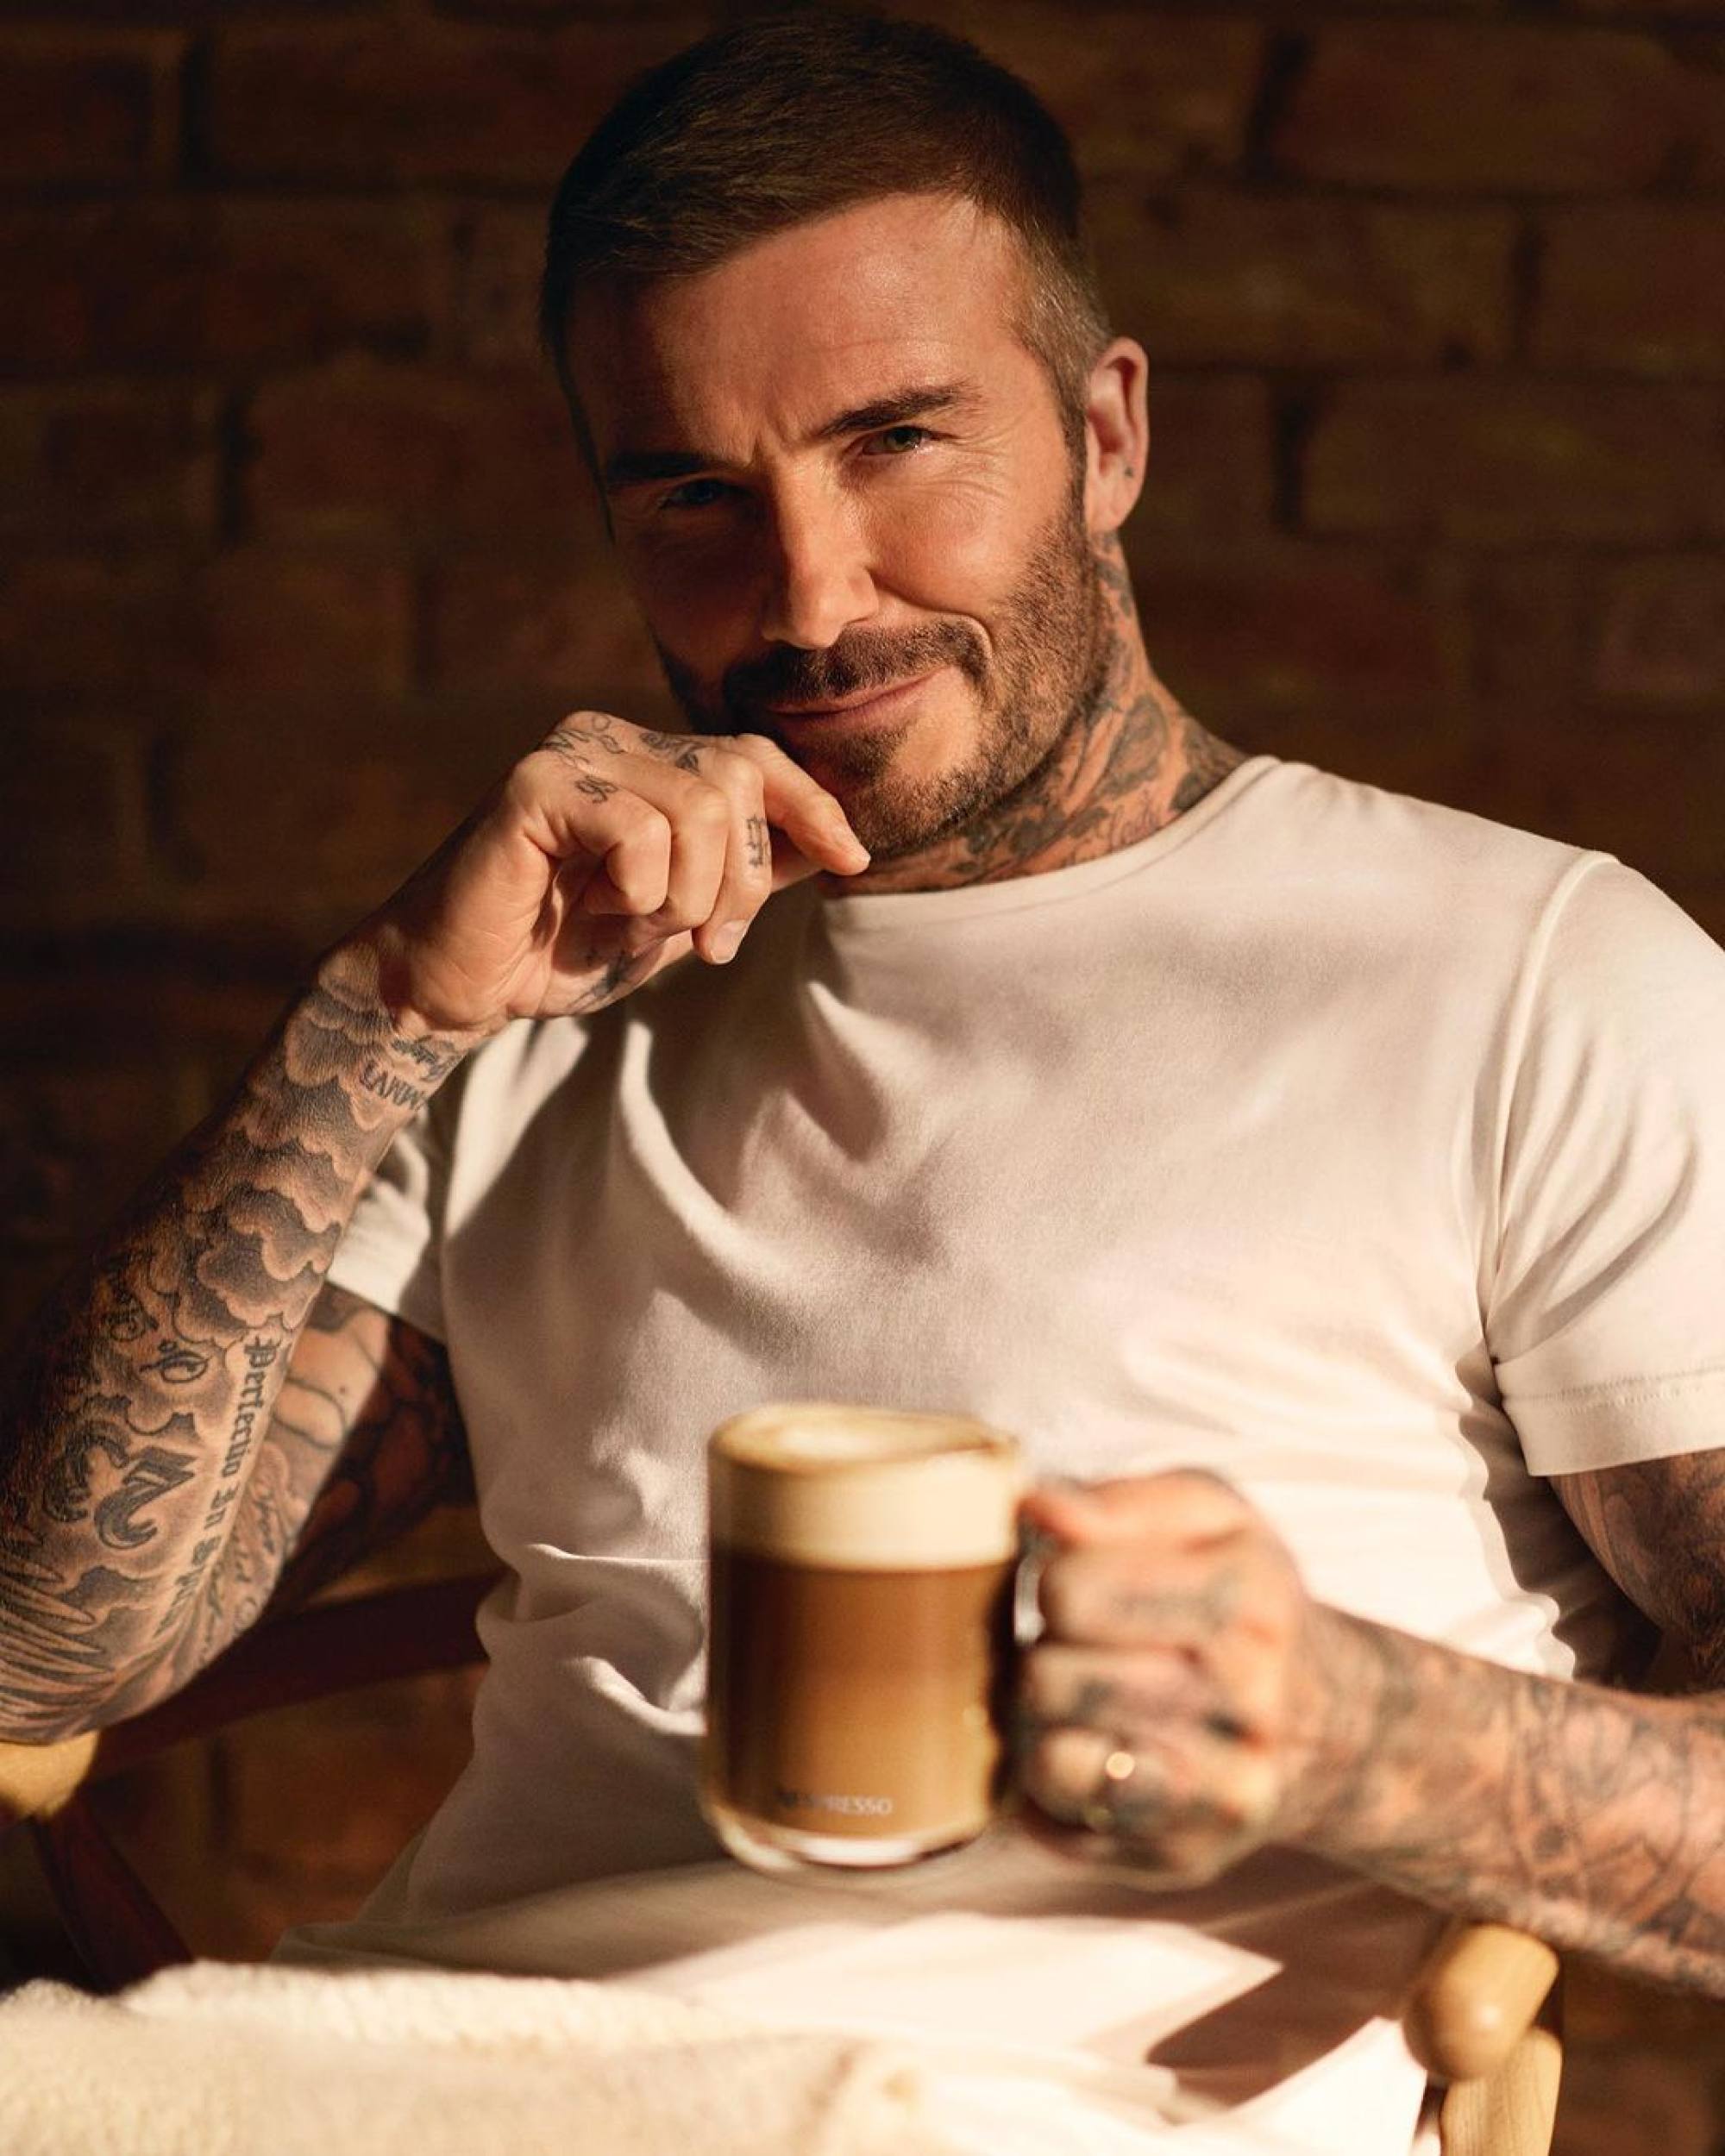 David Beckham có thể yên tâm khi biết anh có hàng triệu USD trong ngân hàng nhờ sự nghiệp bóng đá. Ảnh: @davidbeckham/Instagram